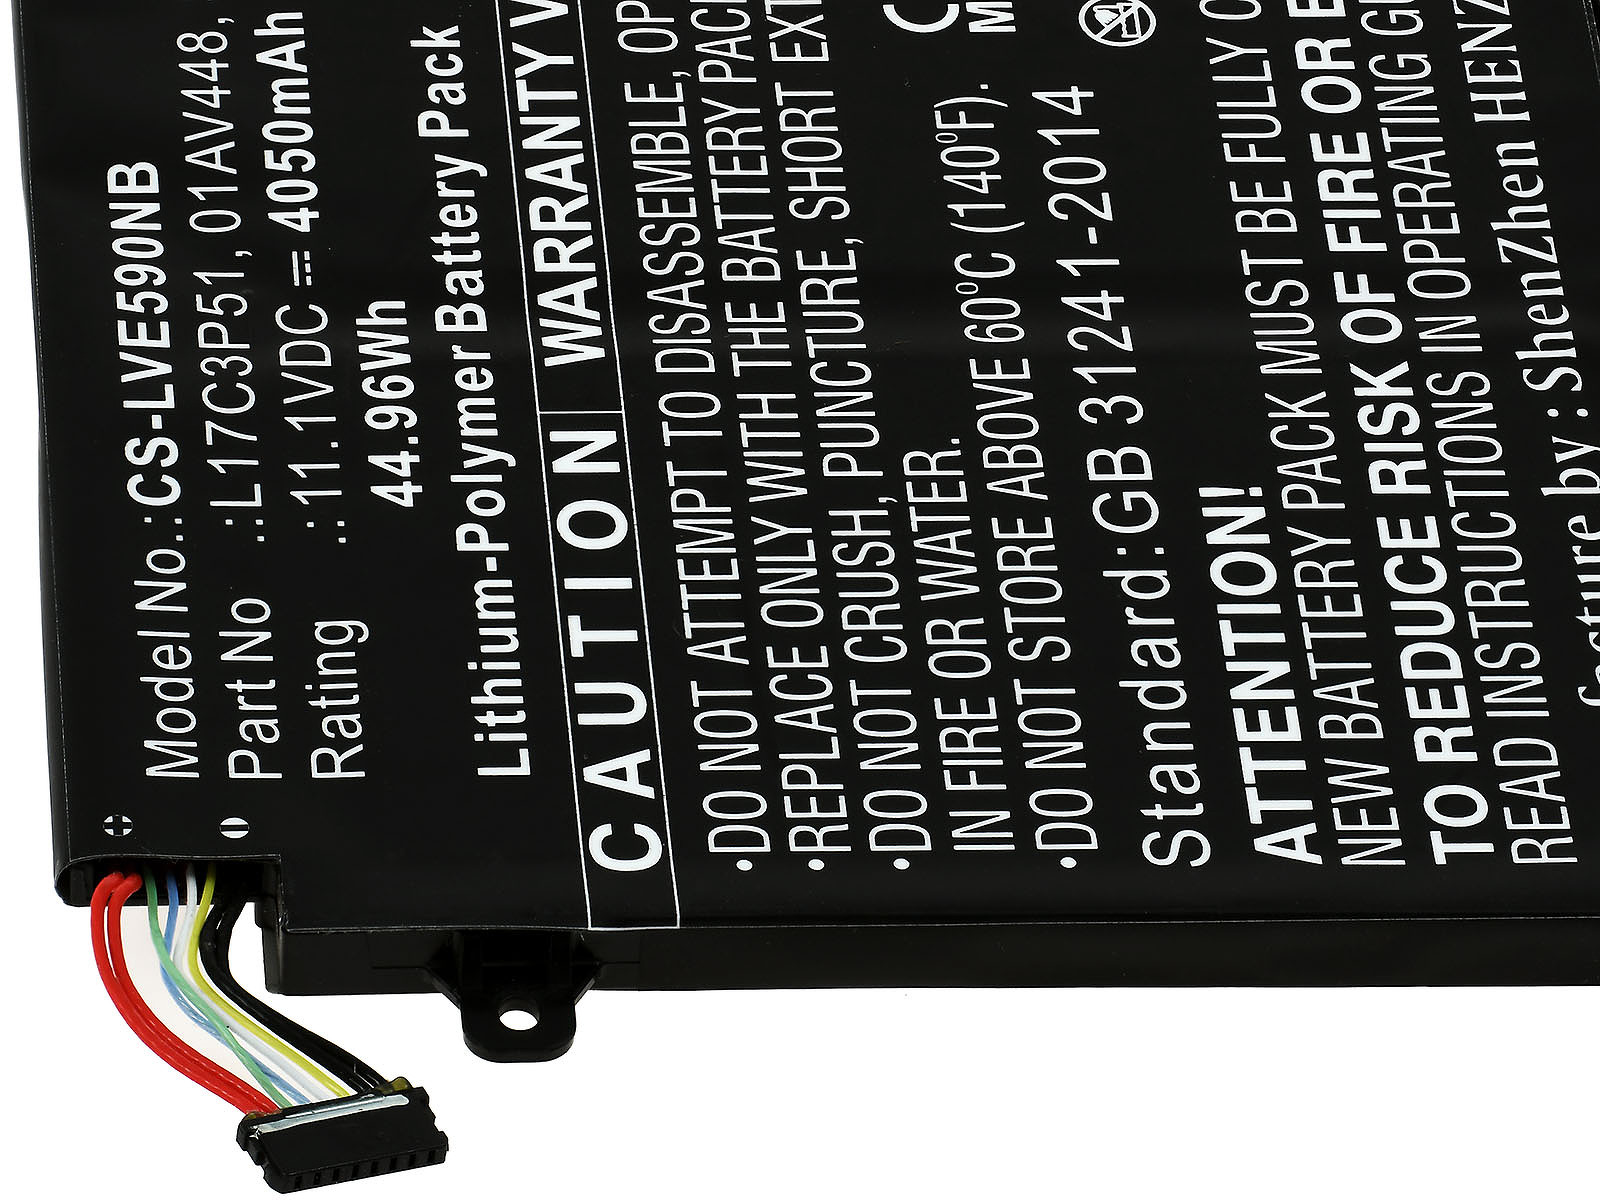 POWERY Akku 4050mAh Volt, ThinkPad Lenovo für 11.1 Akku, Li-Polymer E490